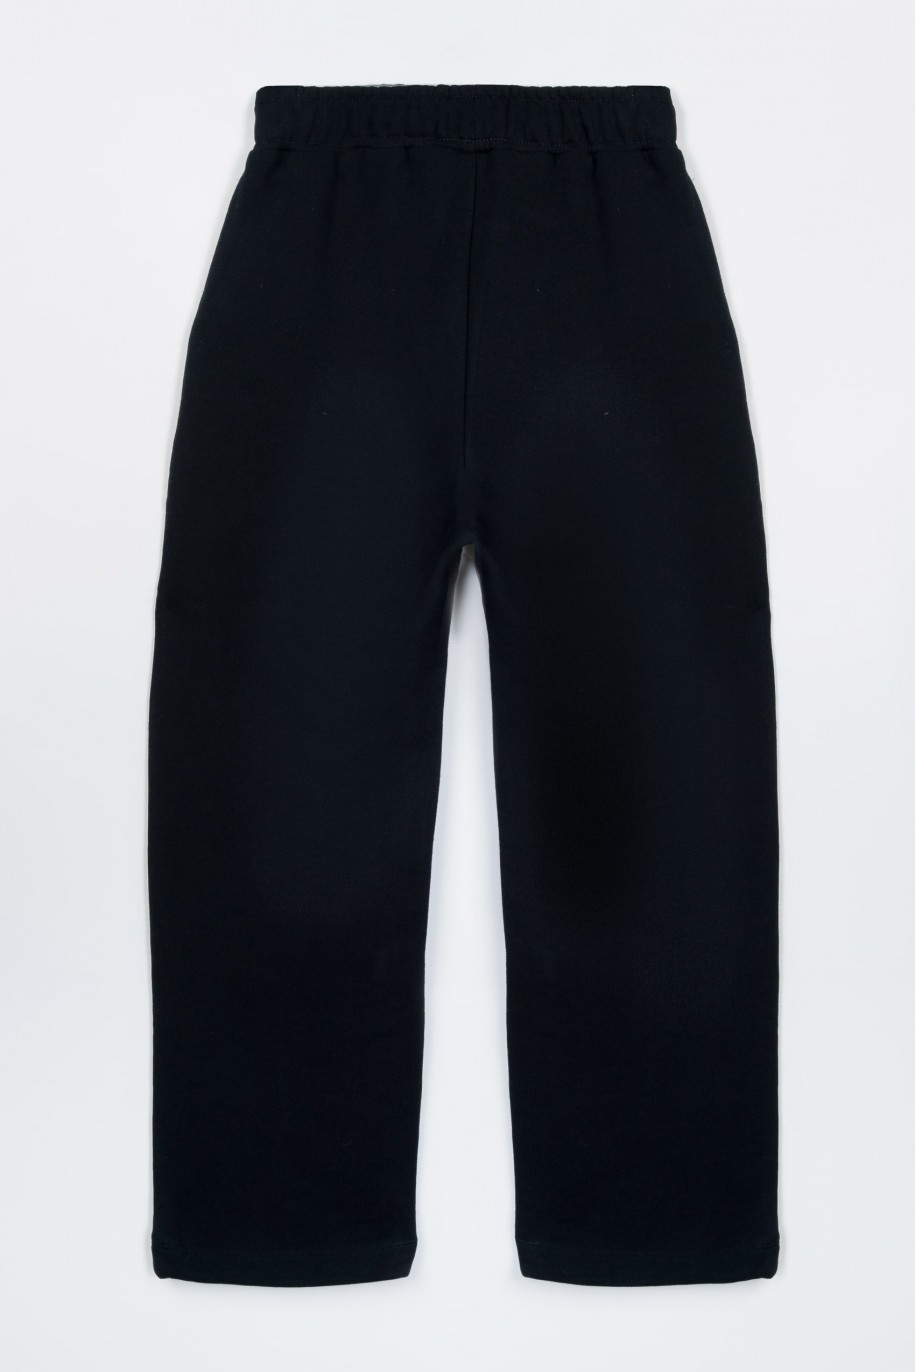 Czarne spodnie dresowe oversize ze ściąganymi nogawkami - 47411